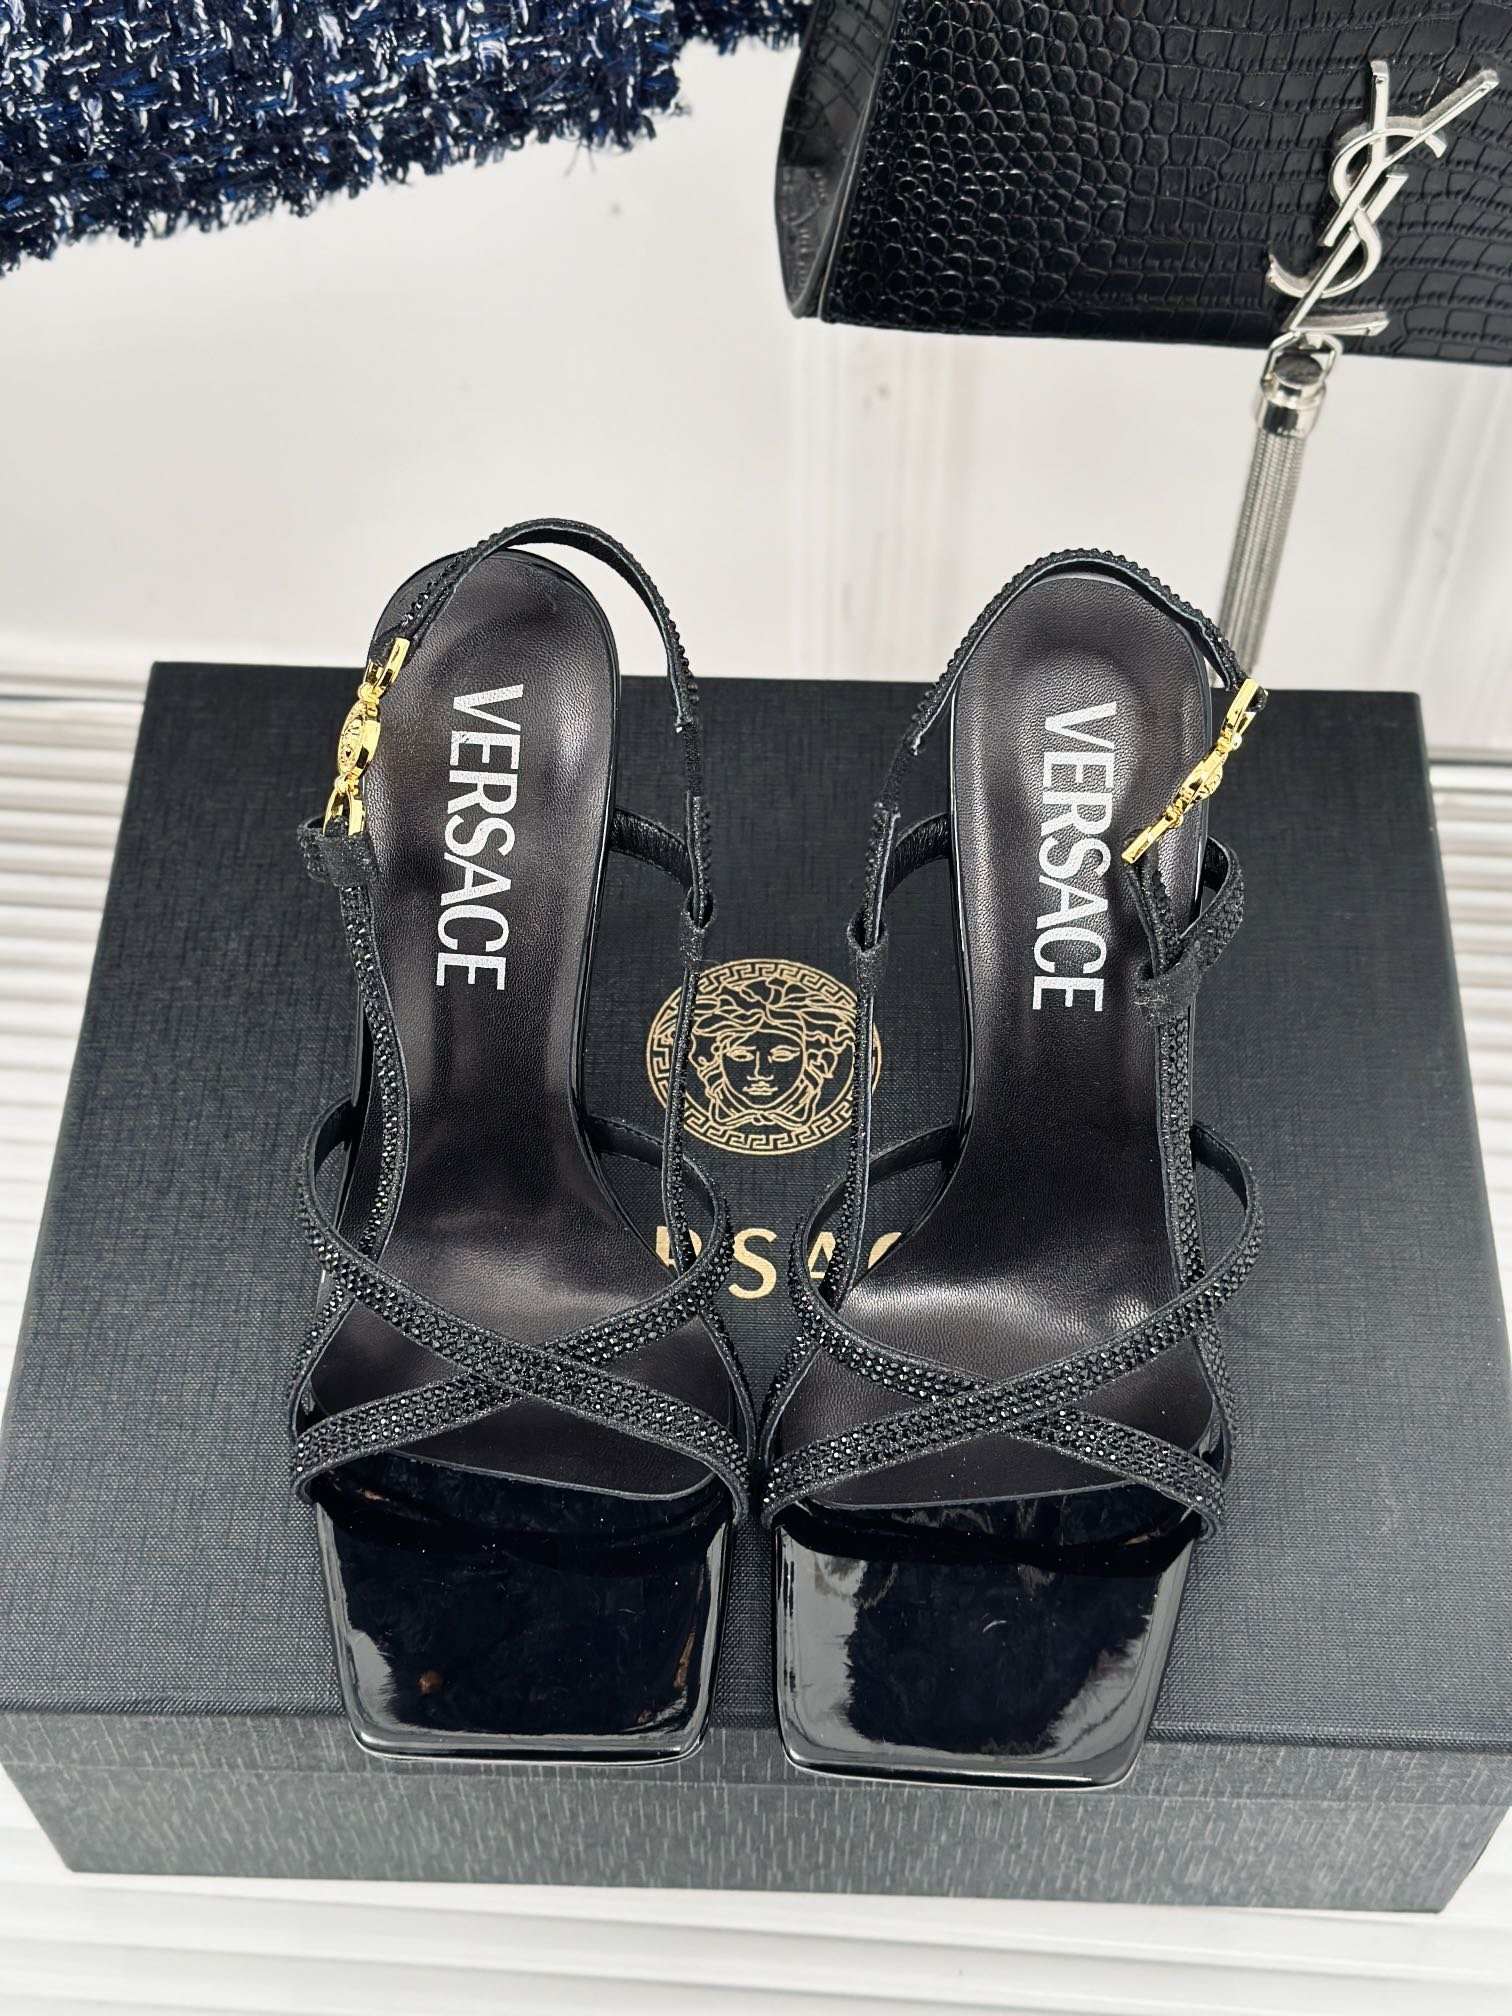 versace范思哲24S春夏新品金属美人头高跟凉鞋鞋面采用进口漆皮/烫钻内里垫脚进口山羊皮跟高10.5